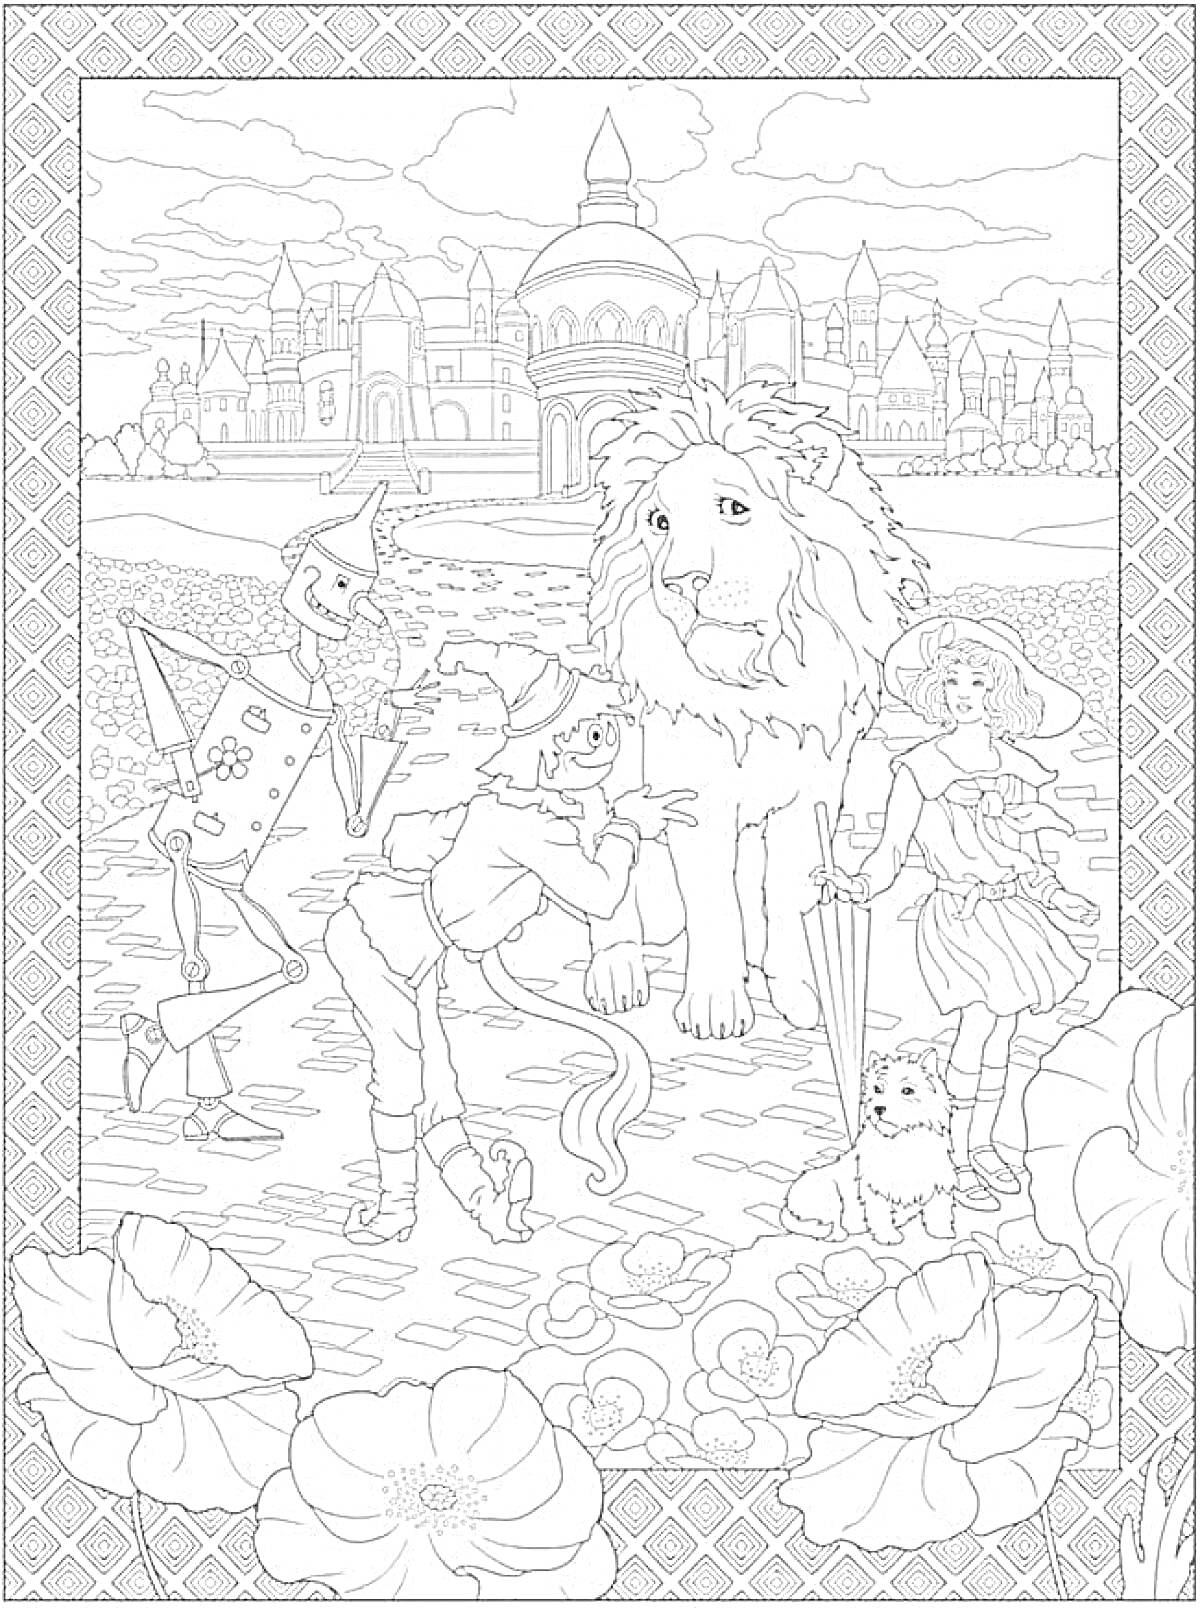 На раскраске изображено: Замок, Лев, Железный Дровосек, Девочка, Природа, Цветы, Из сказок, Дороги, Собака